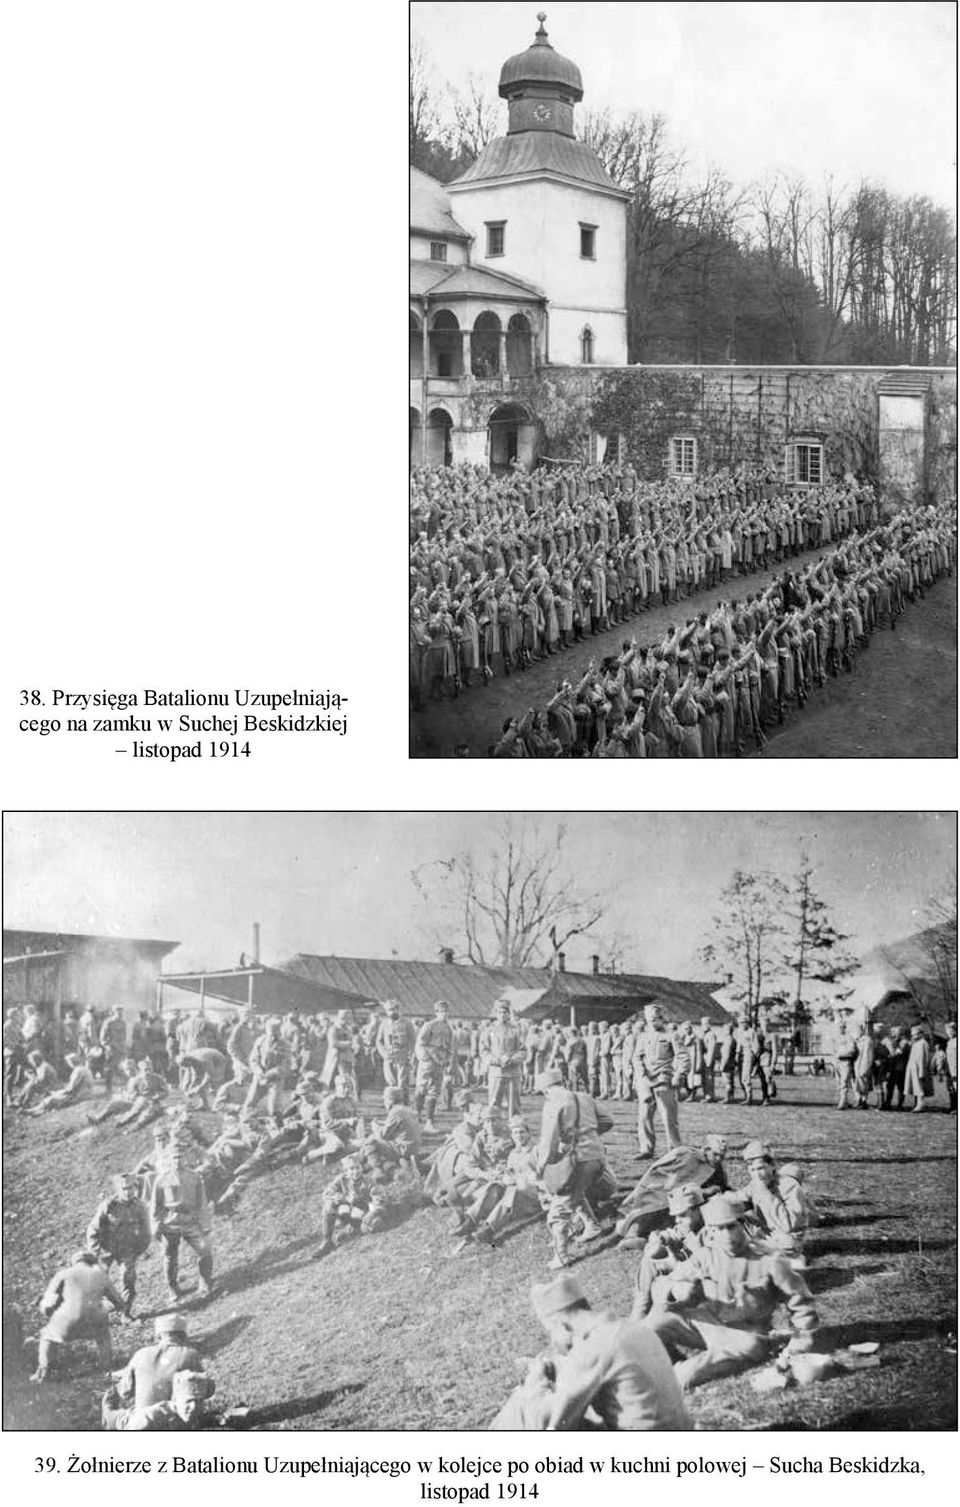 Żołnierze z Batalionu Uzupełniającego w kolejce